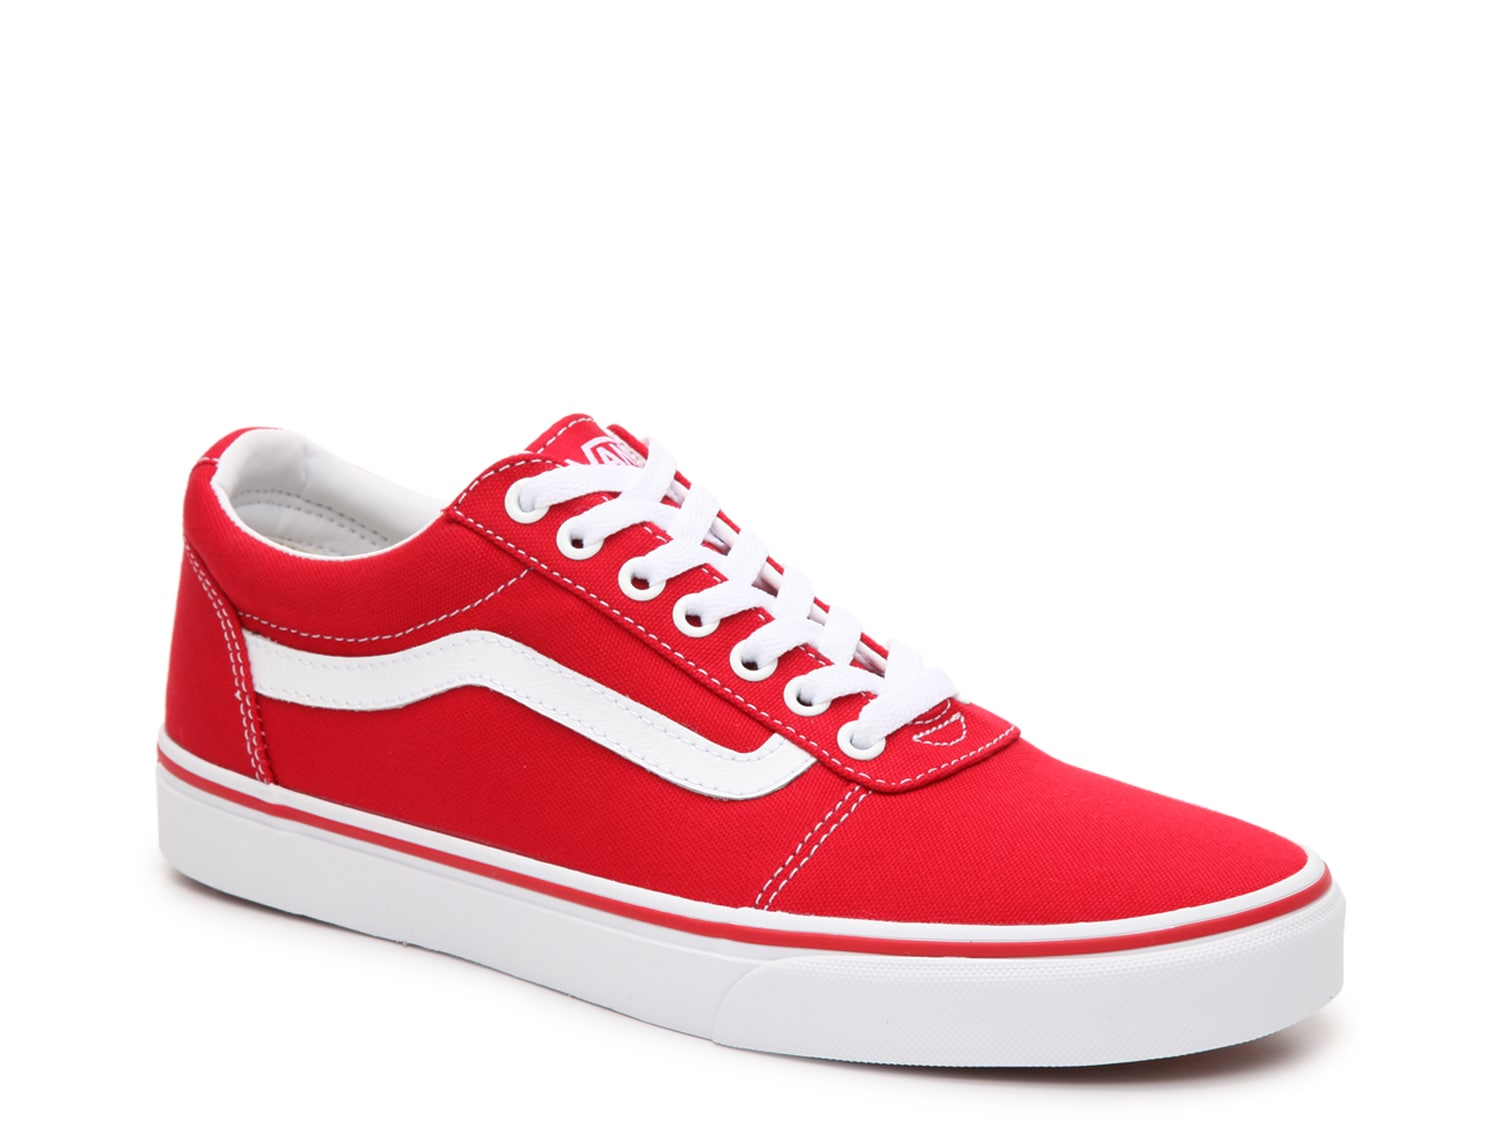 Men's Red Vans Shoes | DSW